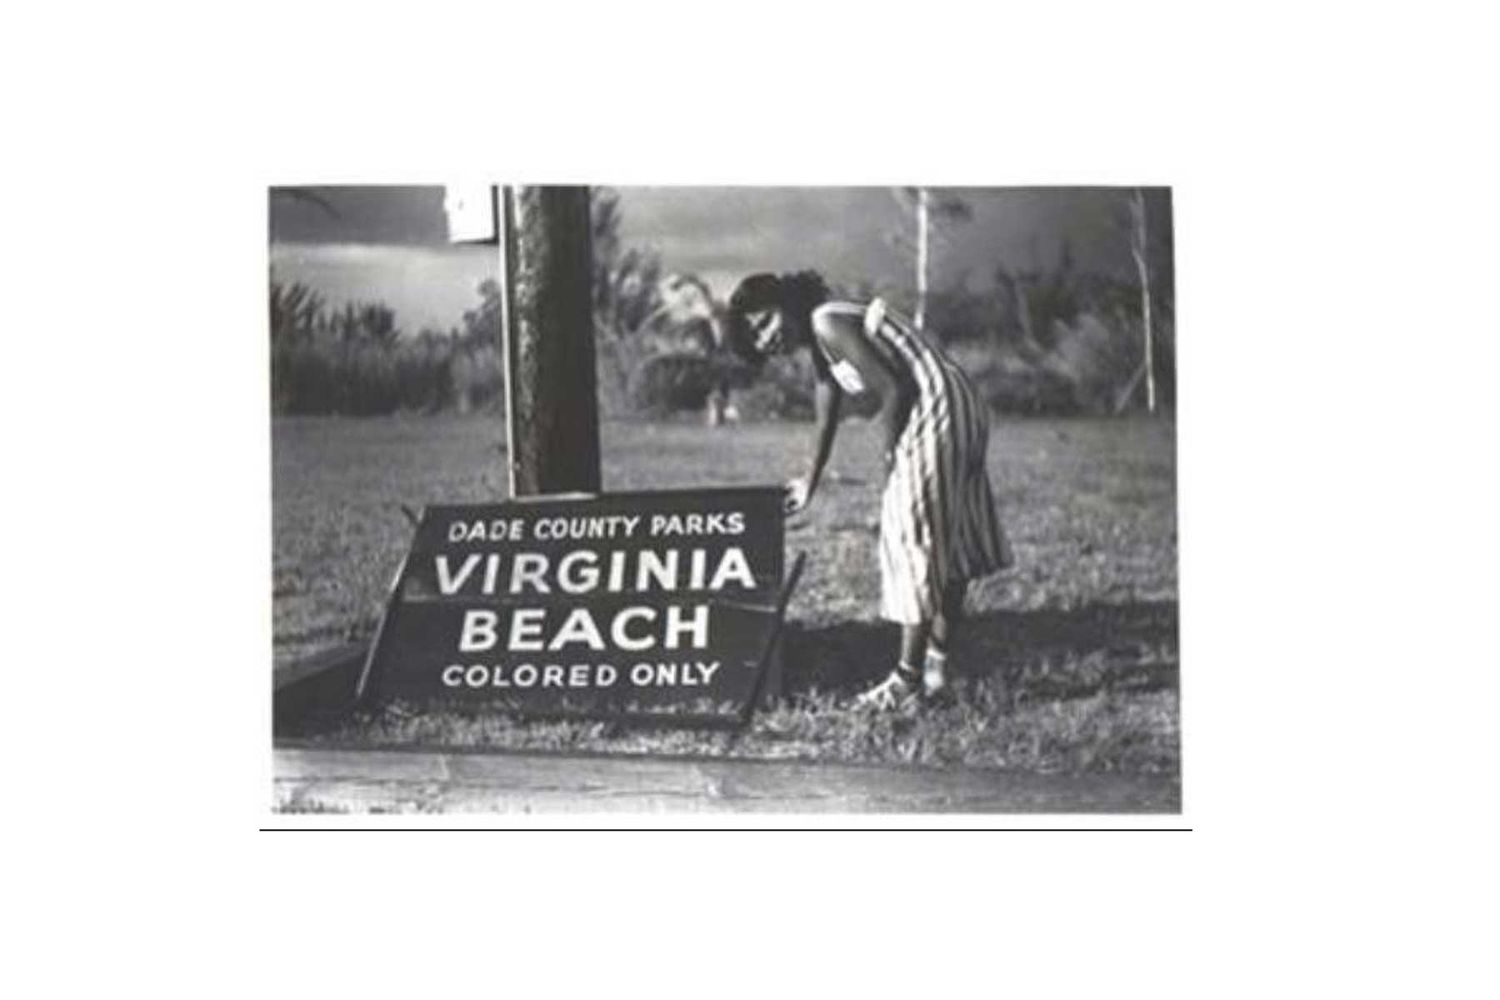 Historique Virginia Key Beach Park en Floride, point de repère historique pour ce qui était autrefois une plage "Colored Only" dans le Jim Crow South